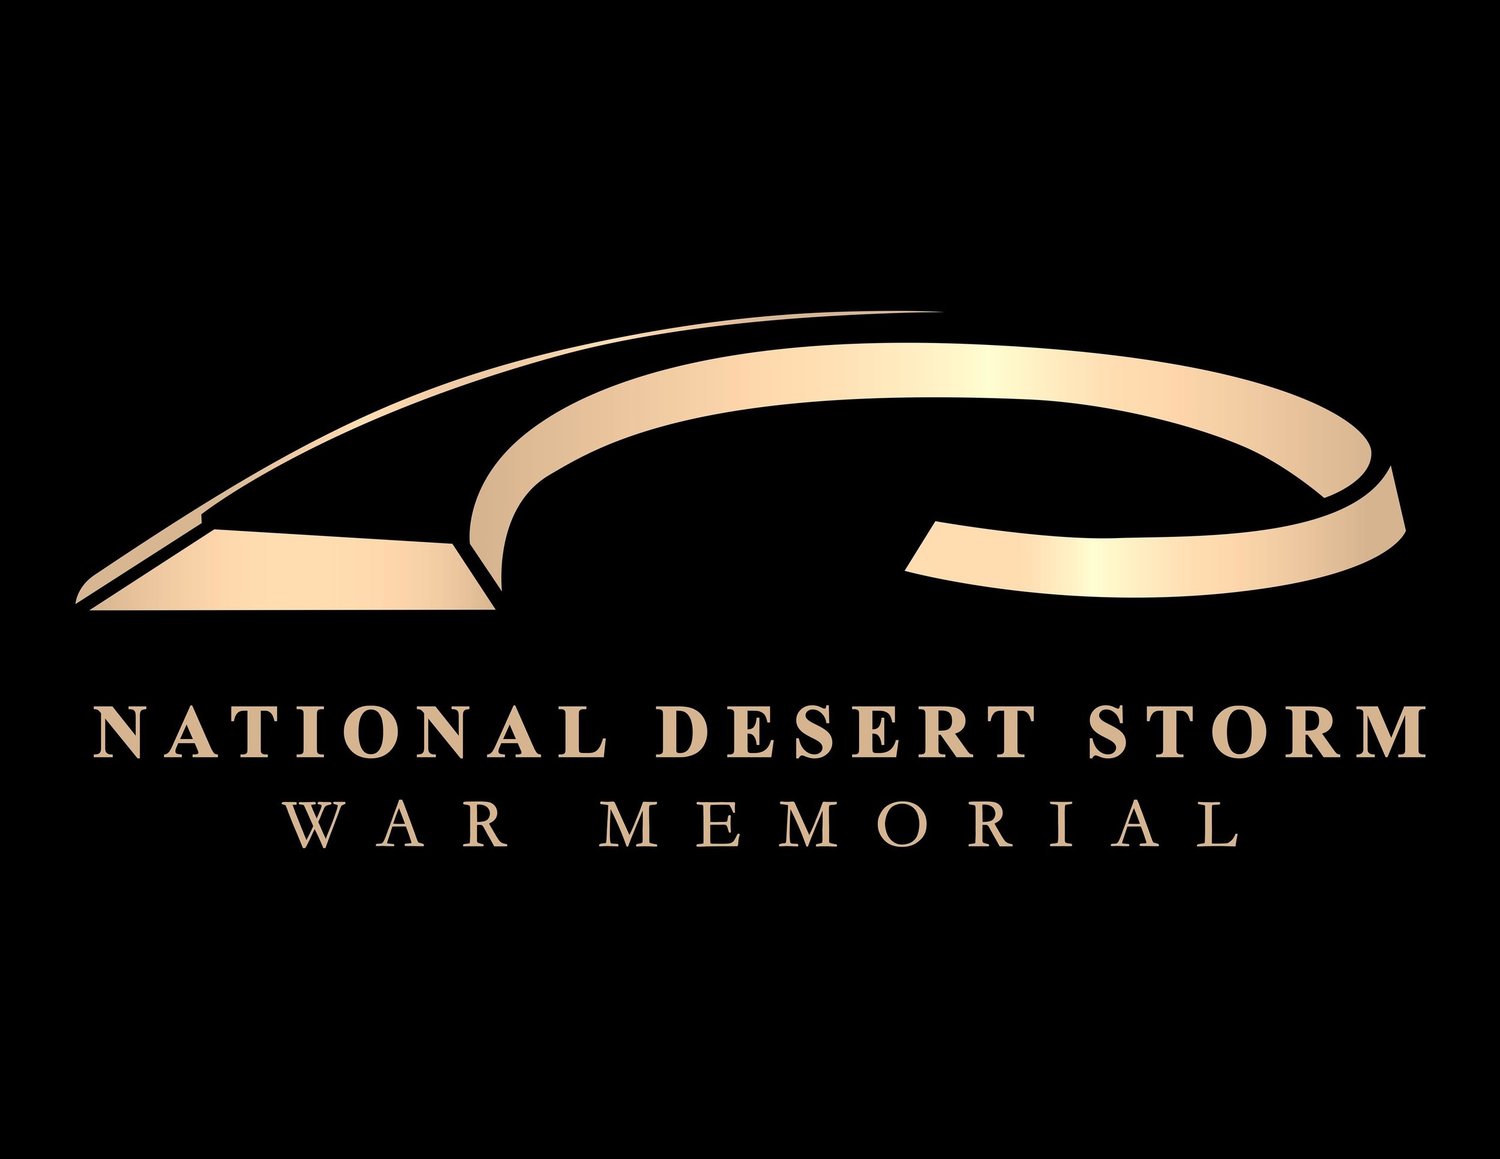 National Desert Storm War Memorial Receives Donation From Team Run Fierce!